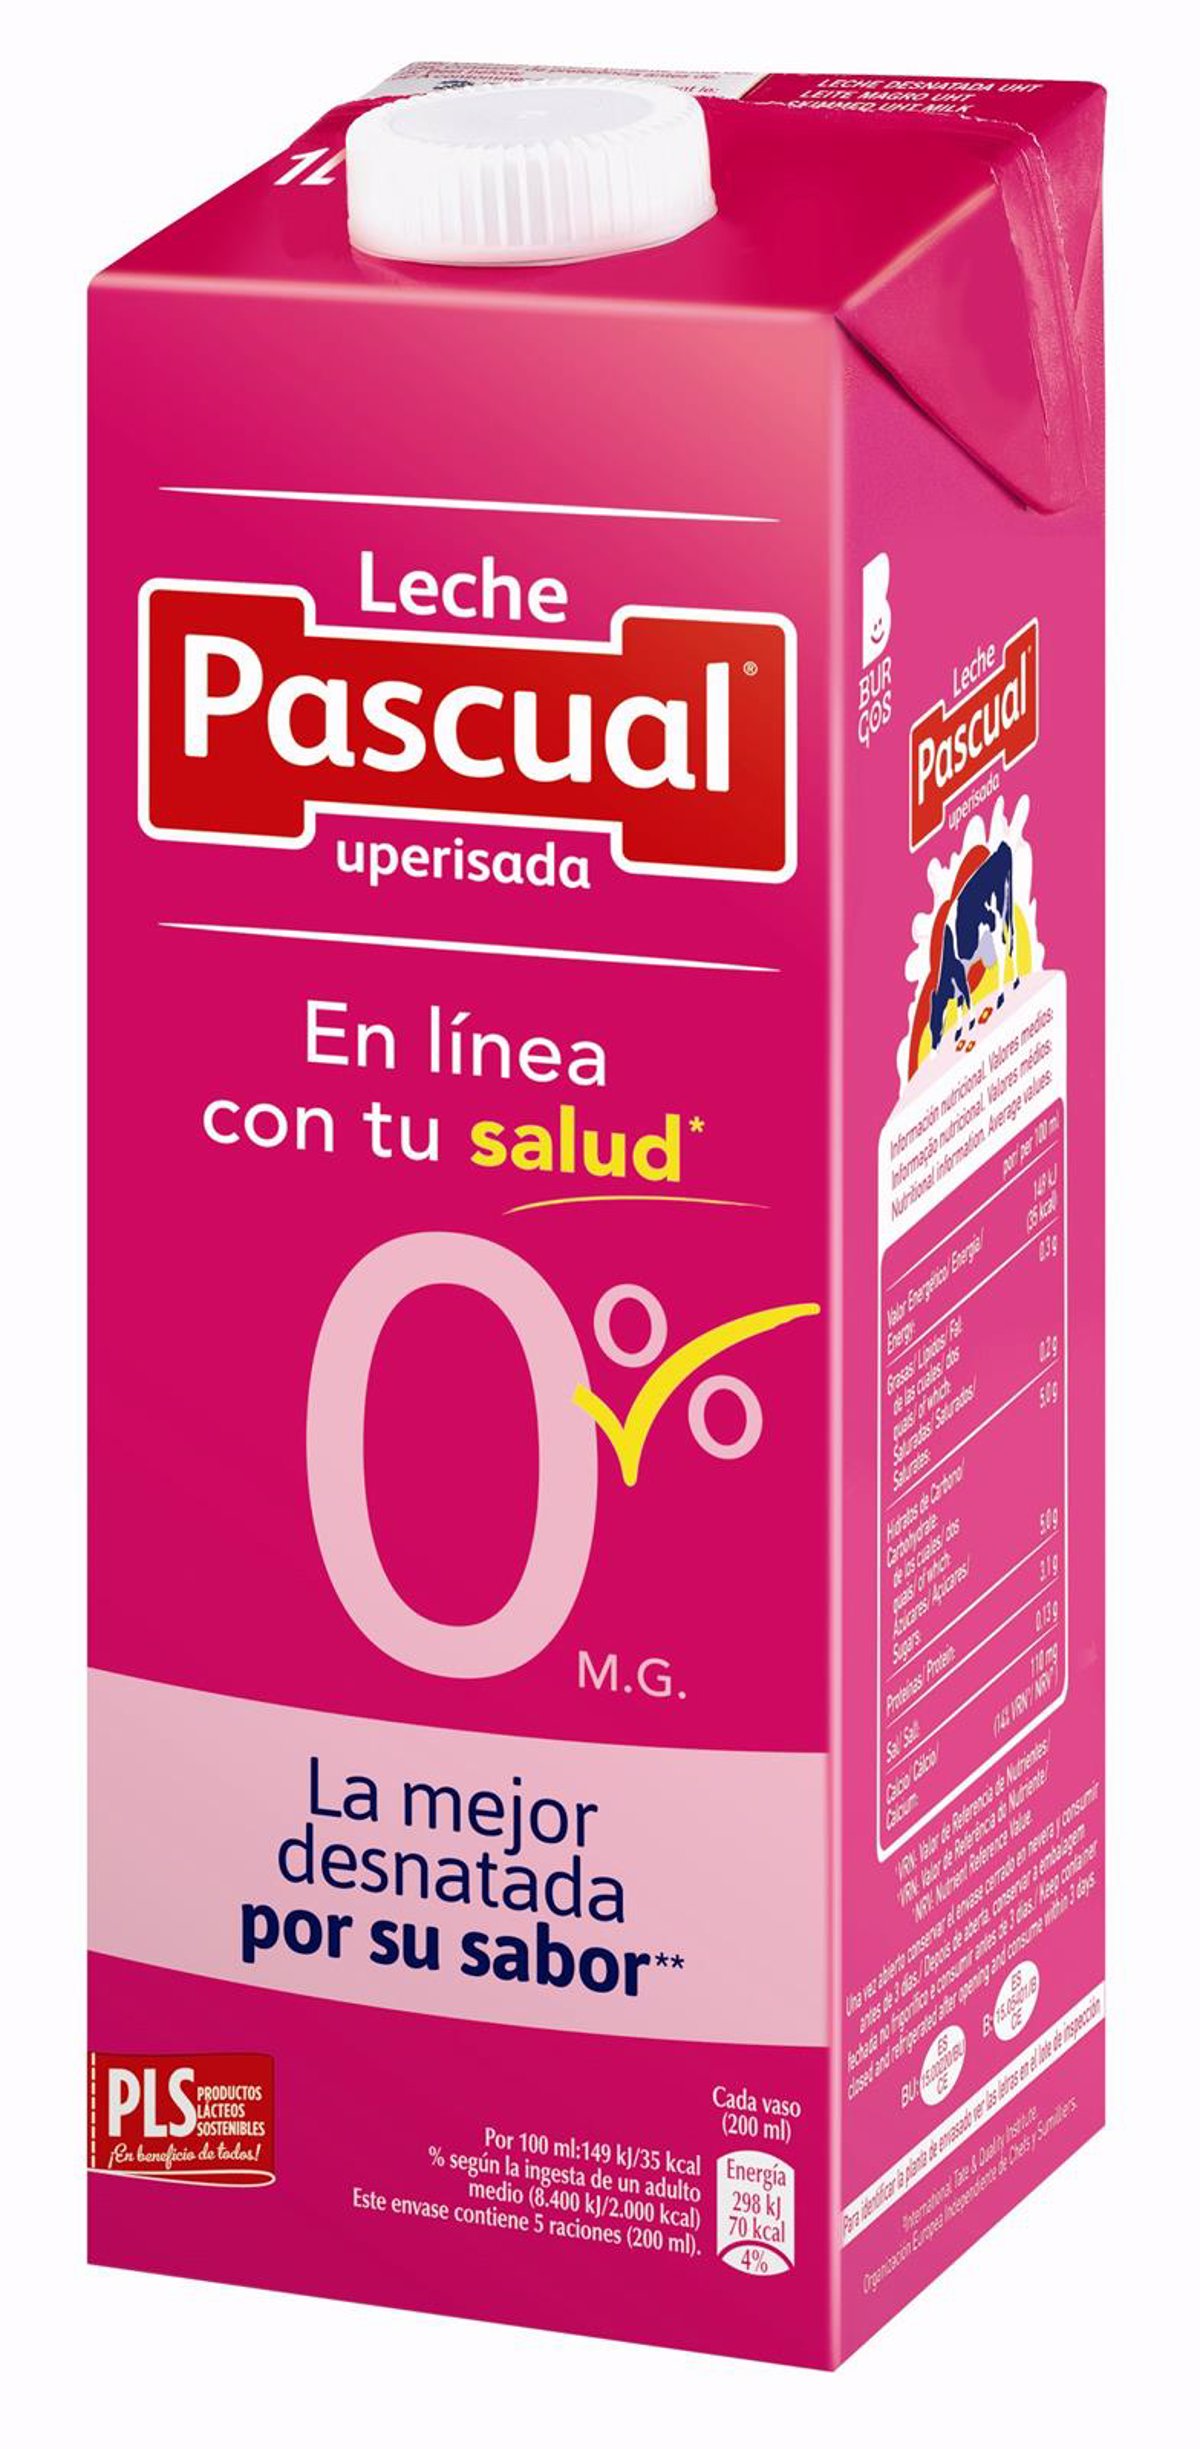 Leche Pascual Desnatada 0%, la que más gusta a los consumidores por su sabor